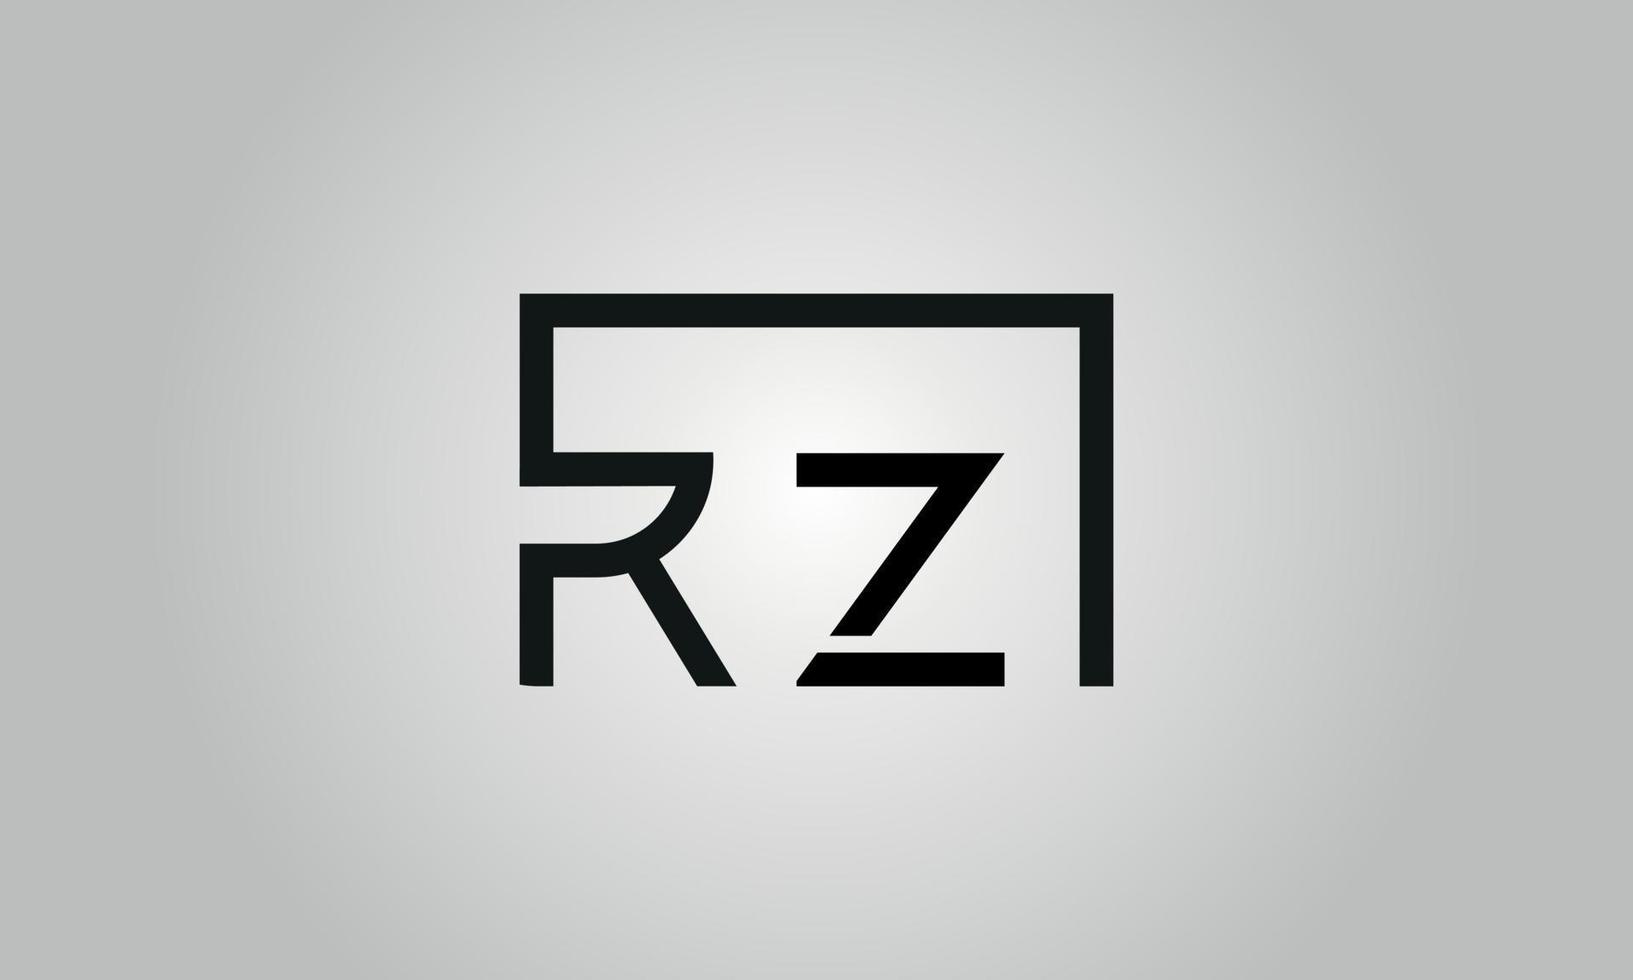 création de logo lettre rz. logo rz avec forme carrée dans le modèle de vecteur gratuit de vecteur de couleurs noires.